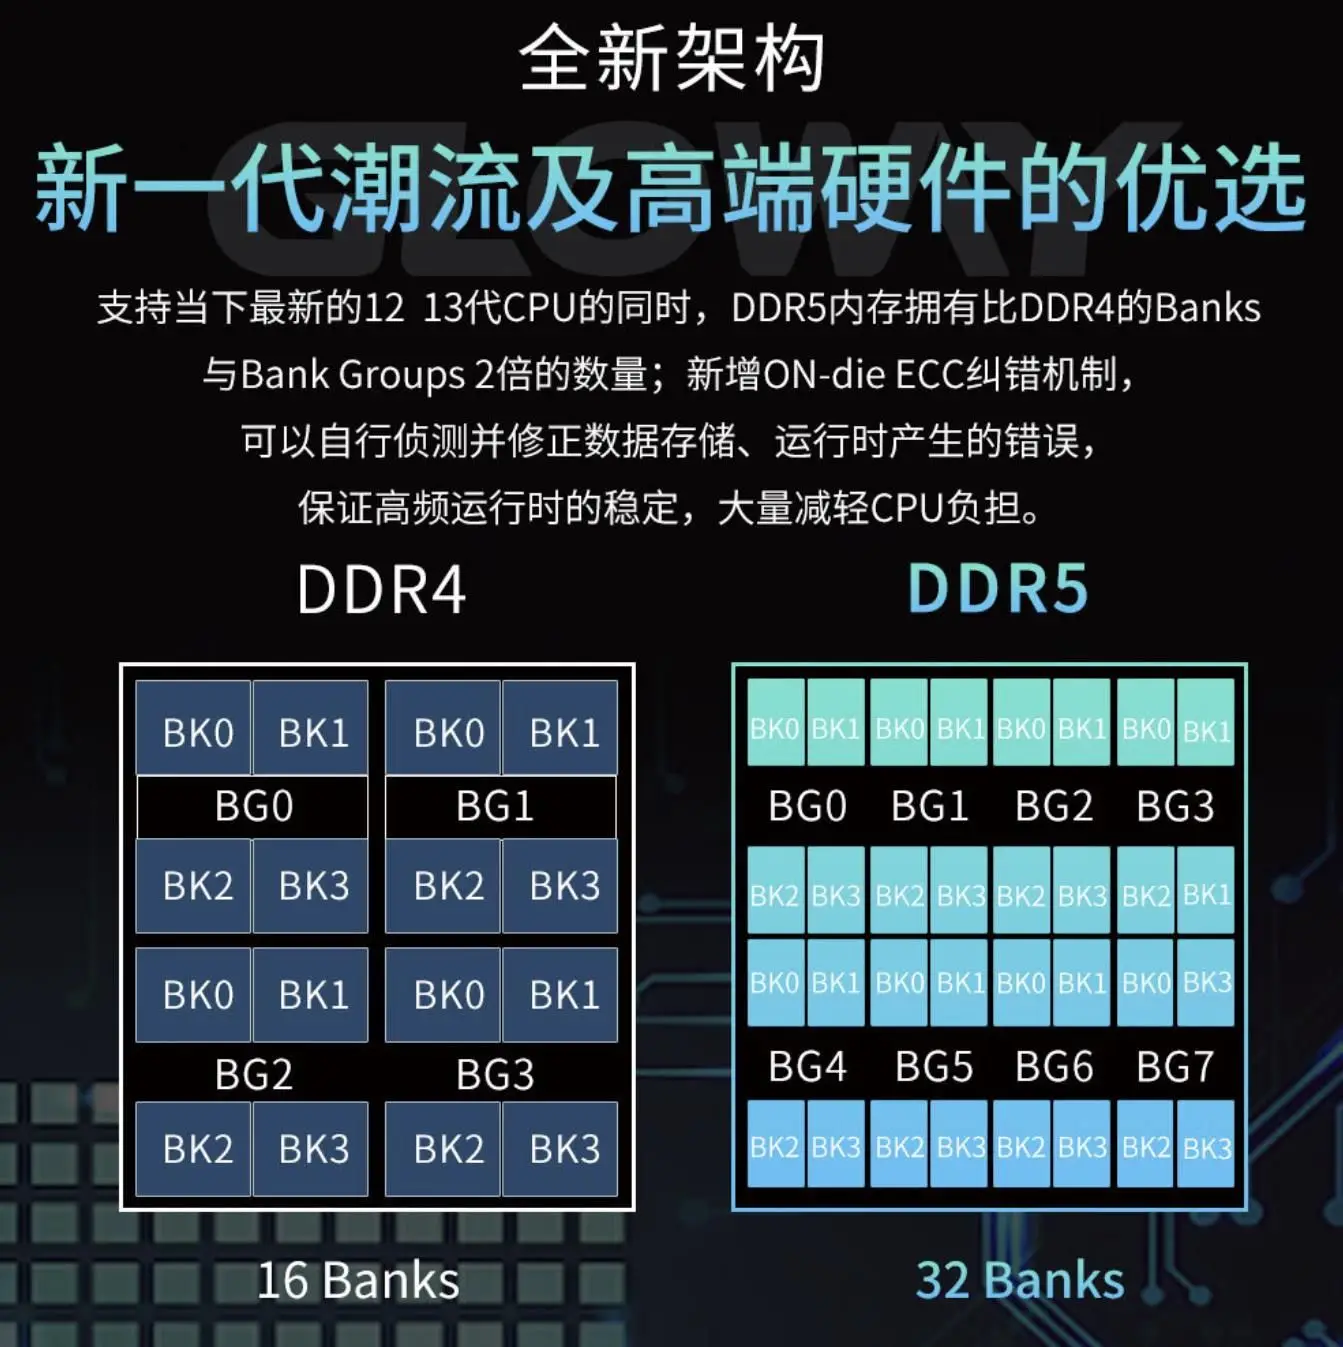 DDR5 内存虽好，但四根内存带来的挑战与兼容性问题需谨慎考虑  第9张